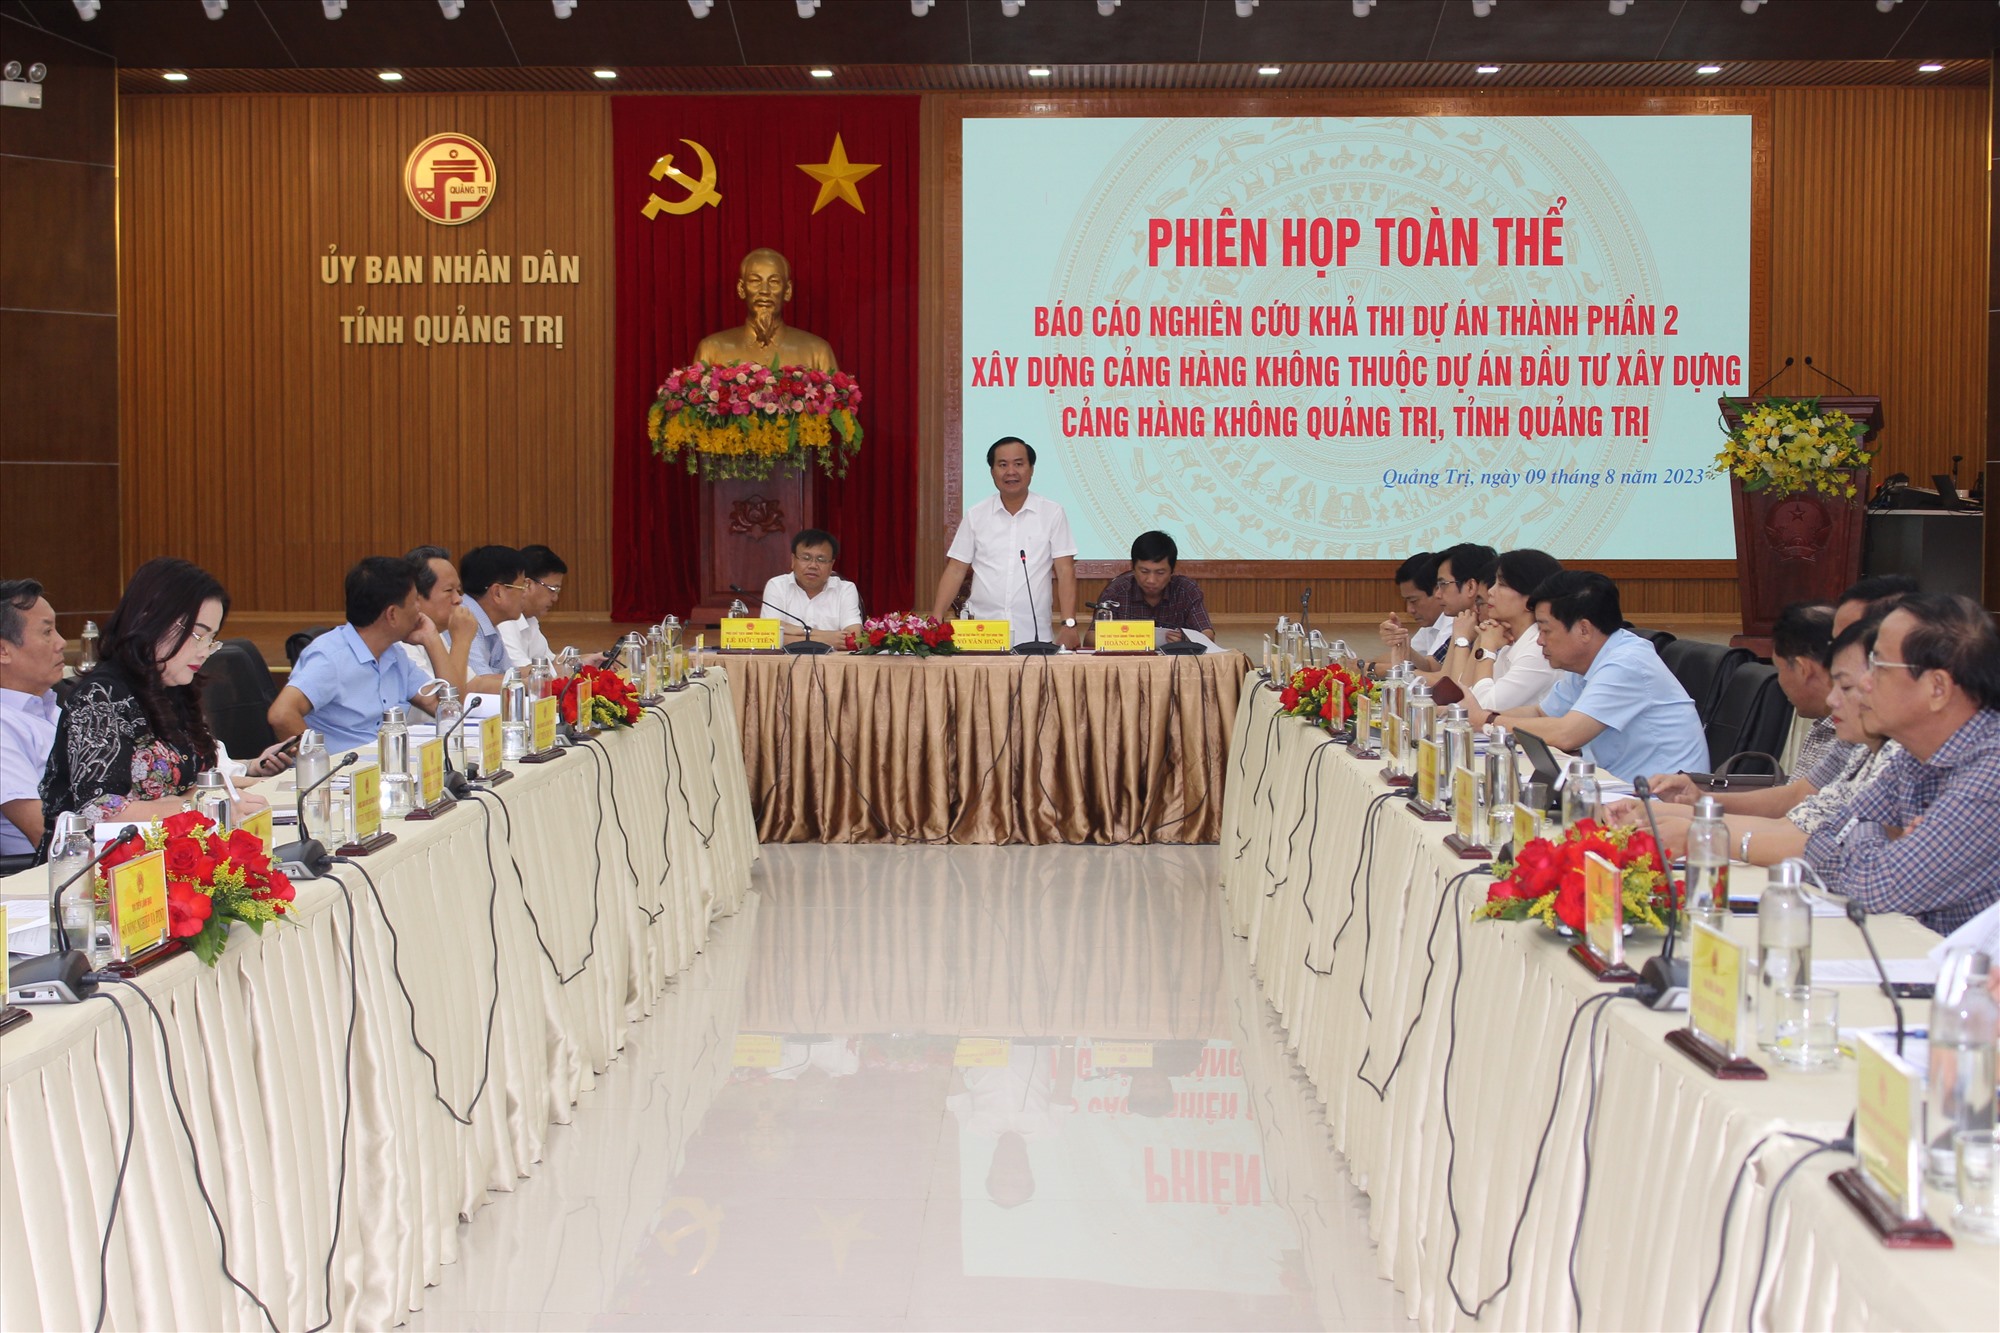 Chủ tịch UBND tỉnh Võ Văn Hưng yêu cầu các sở, ngành, đơn vị tập trung nỗ lực hoàn thiện thủ tục hồ sơ dự án CHK Quảng Trị theo quy định của pháp luật - Ảnh: T.T